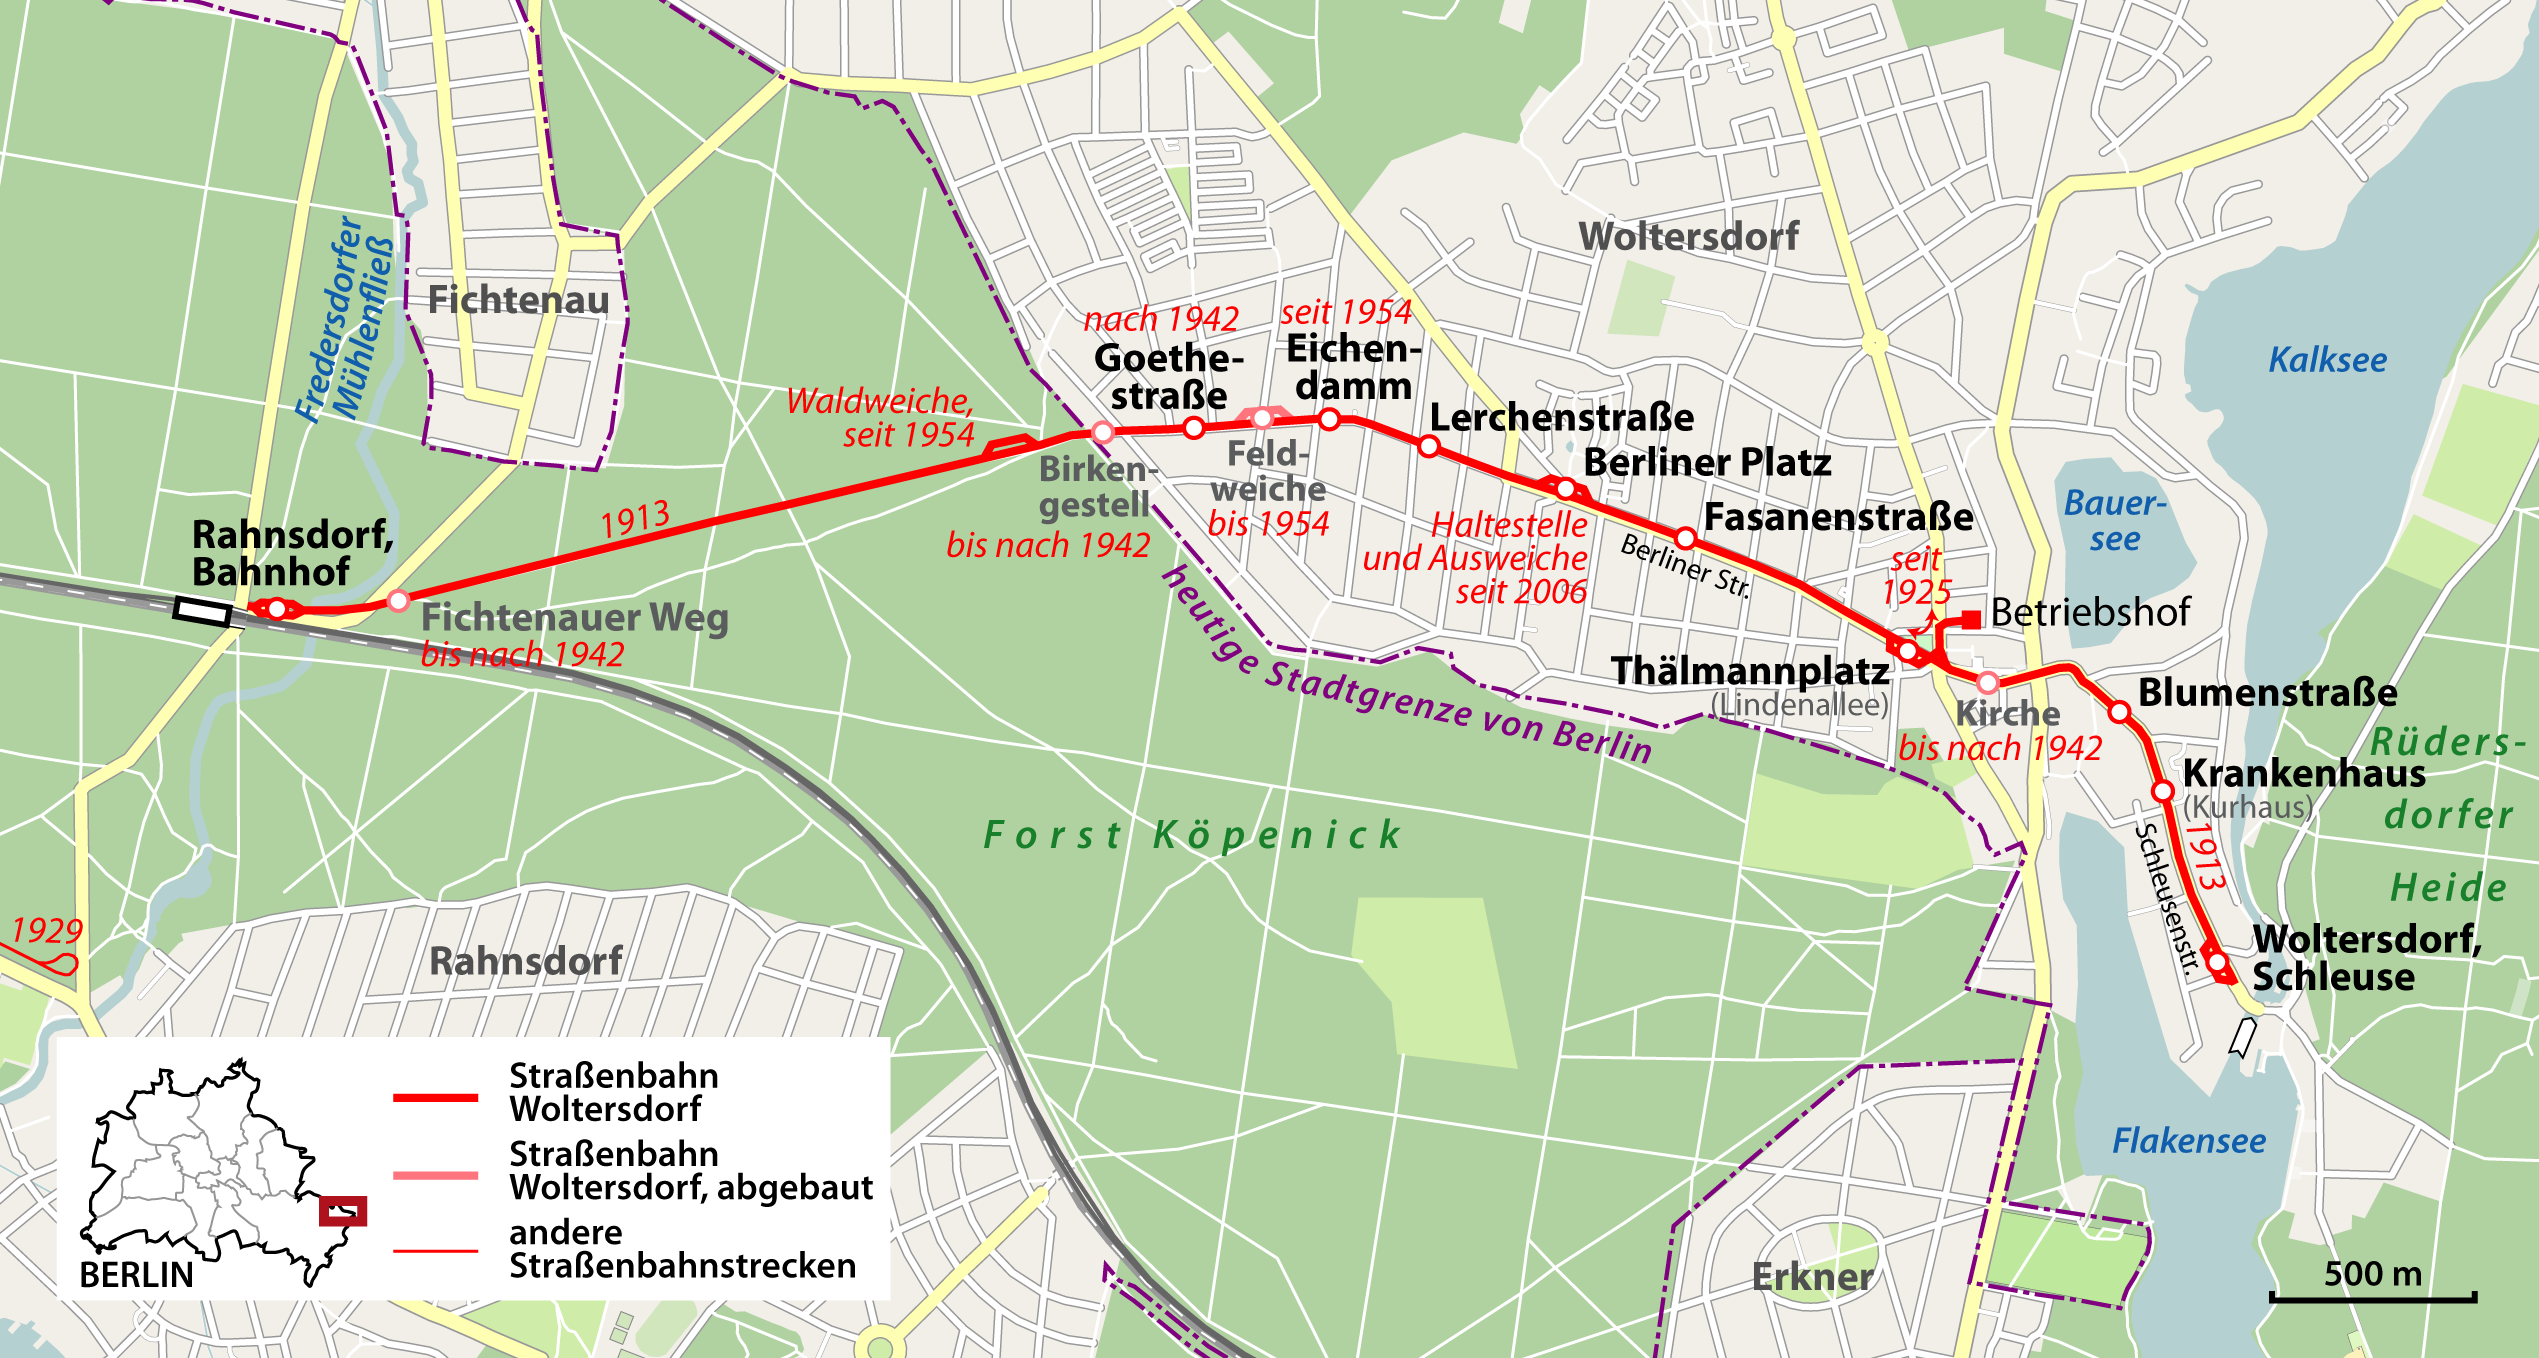 Streckenplan Woltersdorfer Strassenbahn, Quelle Wikipedia